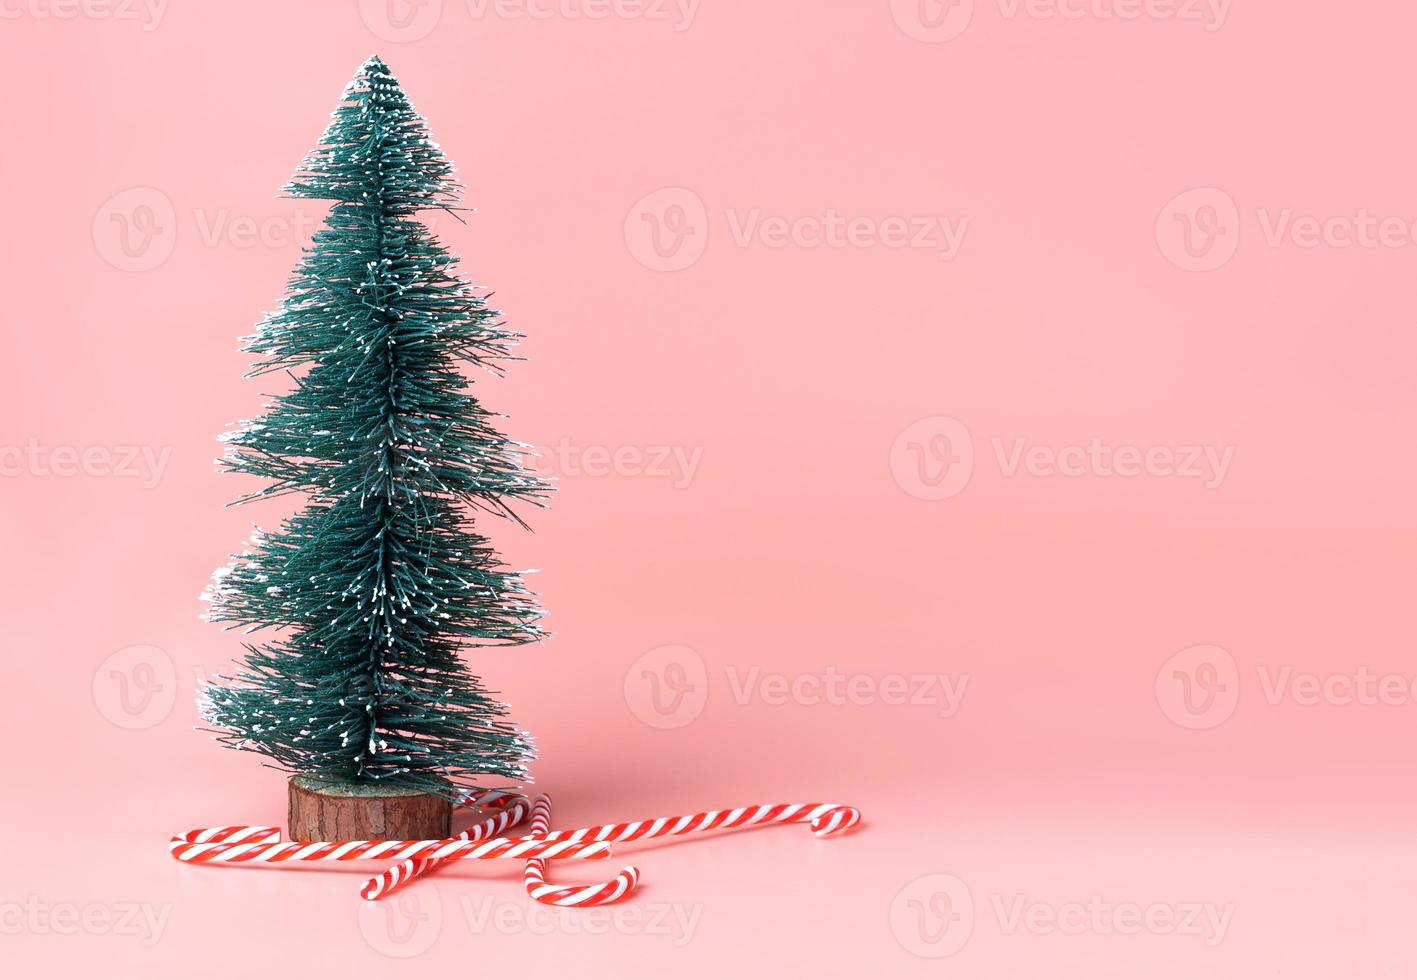 ree kerstboom met snoepgoed op pastelroze studioachtergrond foto